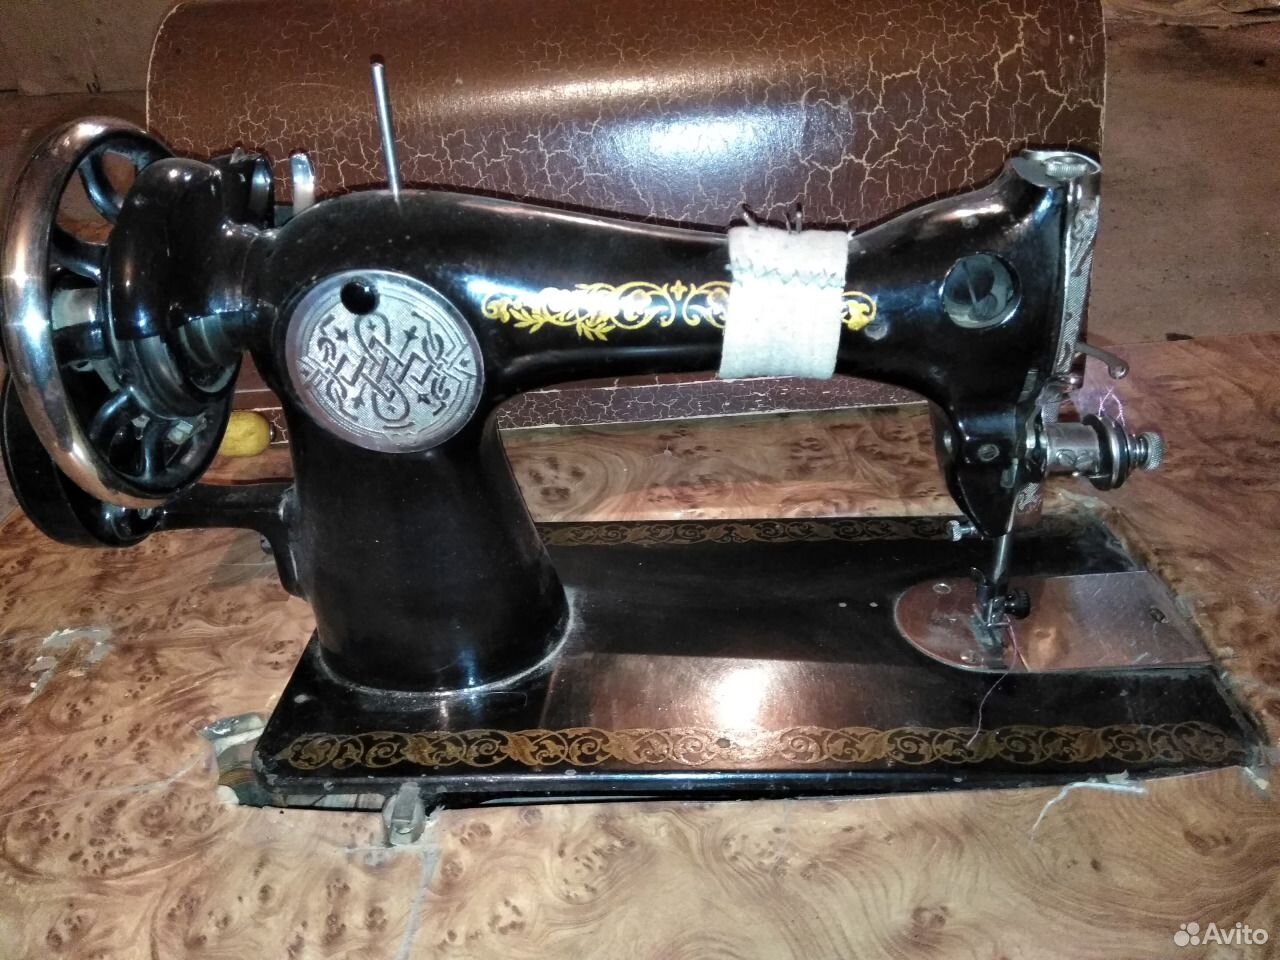 Швейные машинки подольск б у. Подольская швейная машинка. Подольская швейная машина с4713657. Подольска швейная машина с3106463. Крышка для Подольской швейной машинки.